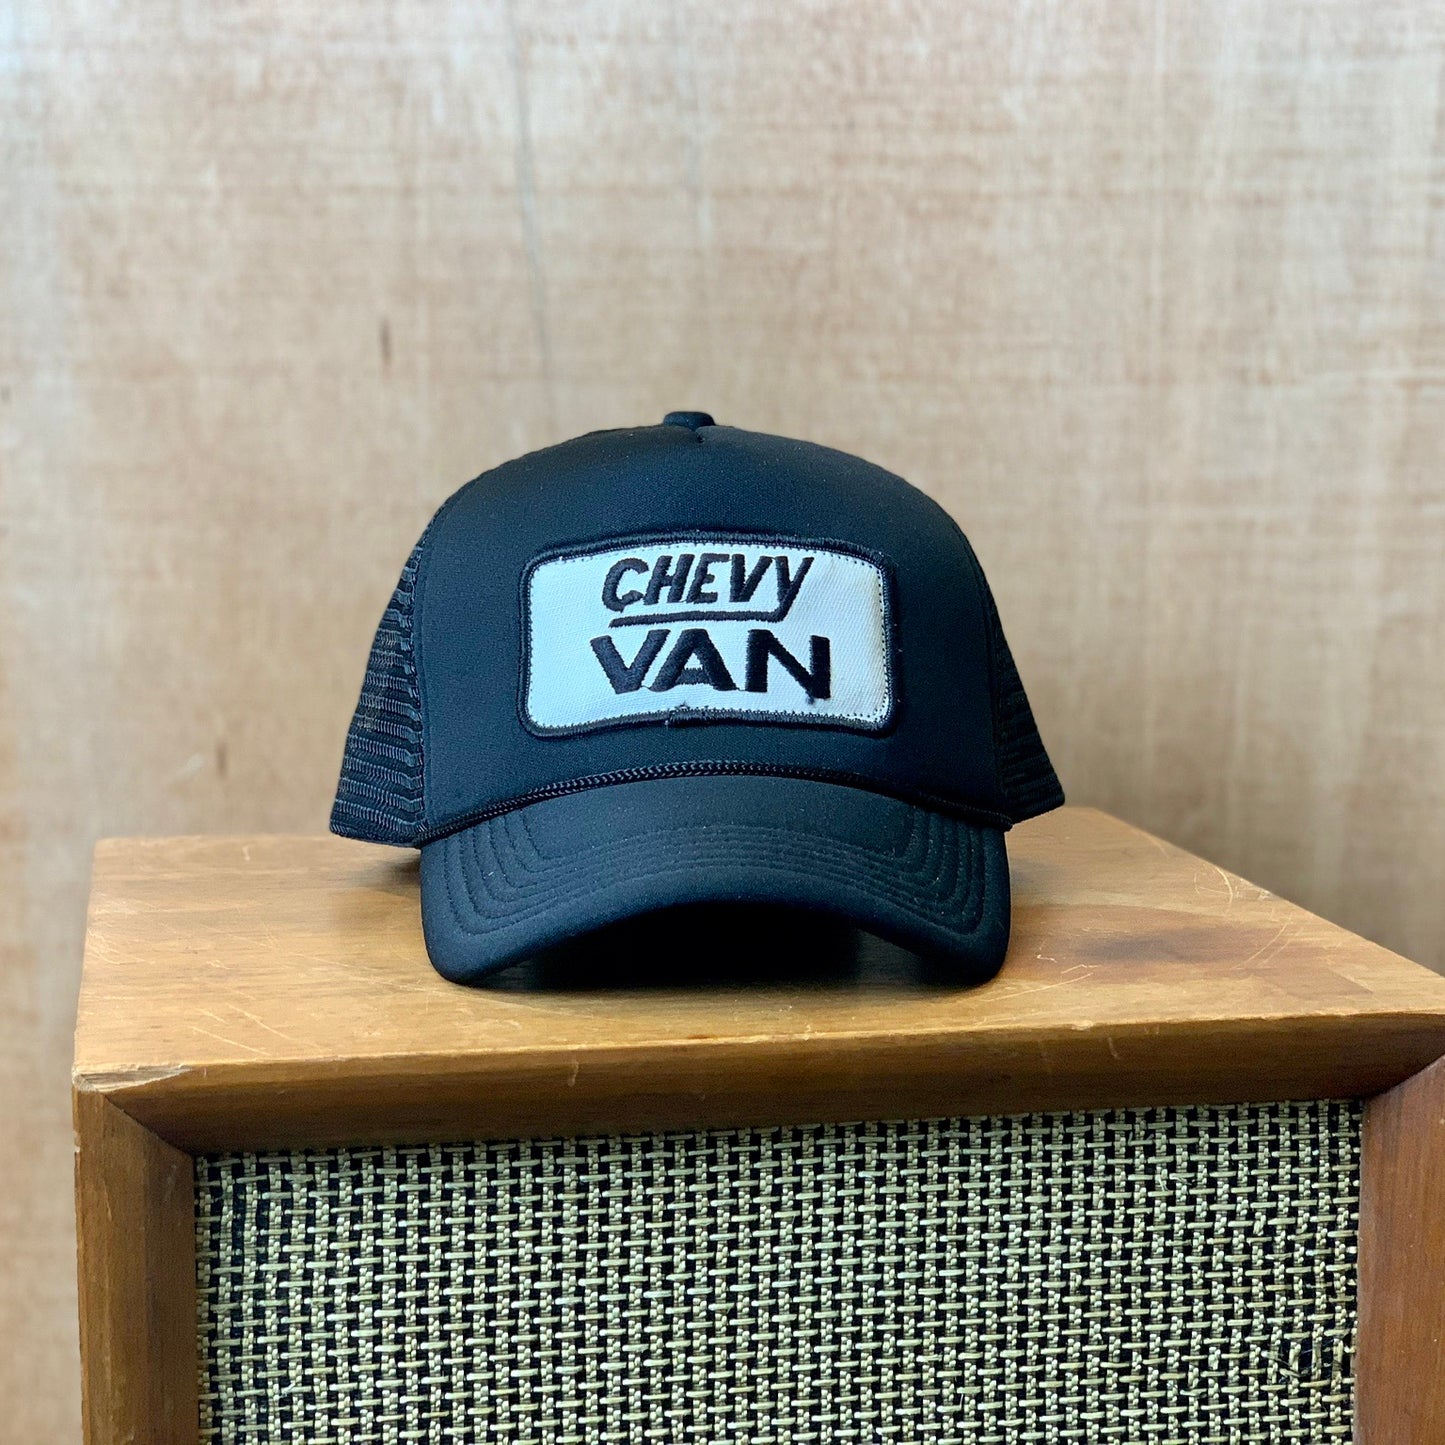 Vintage Chevy Van Trucker